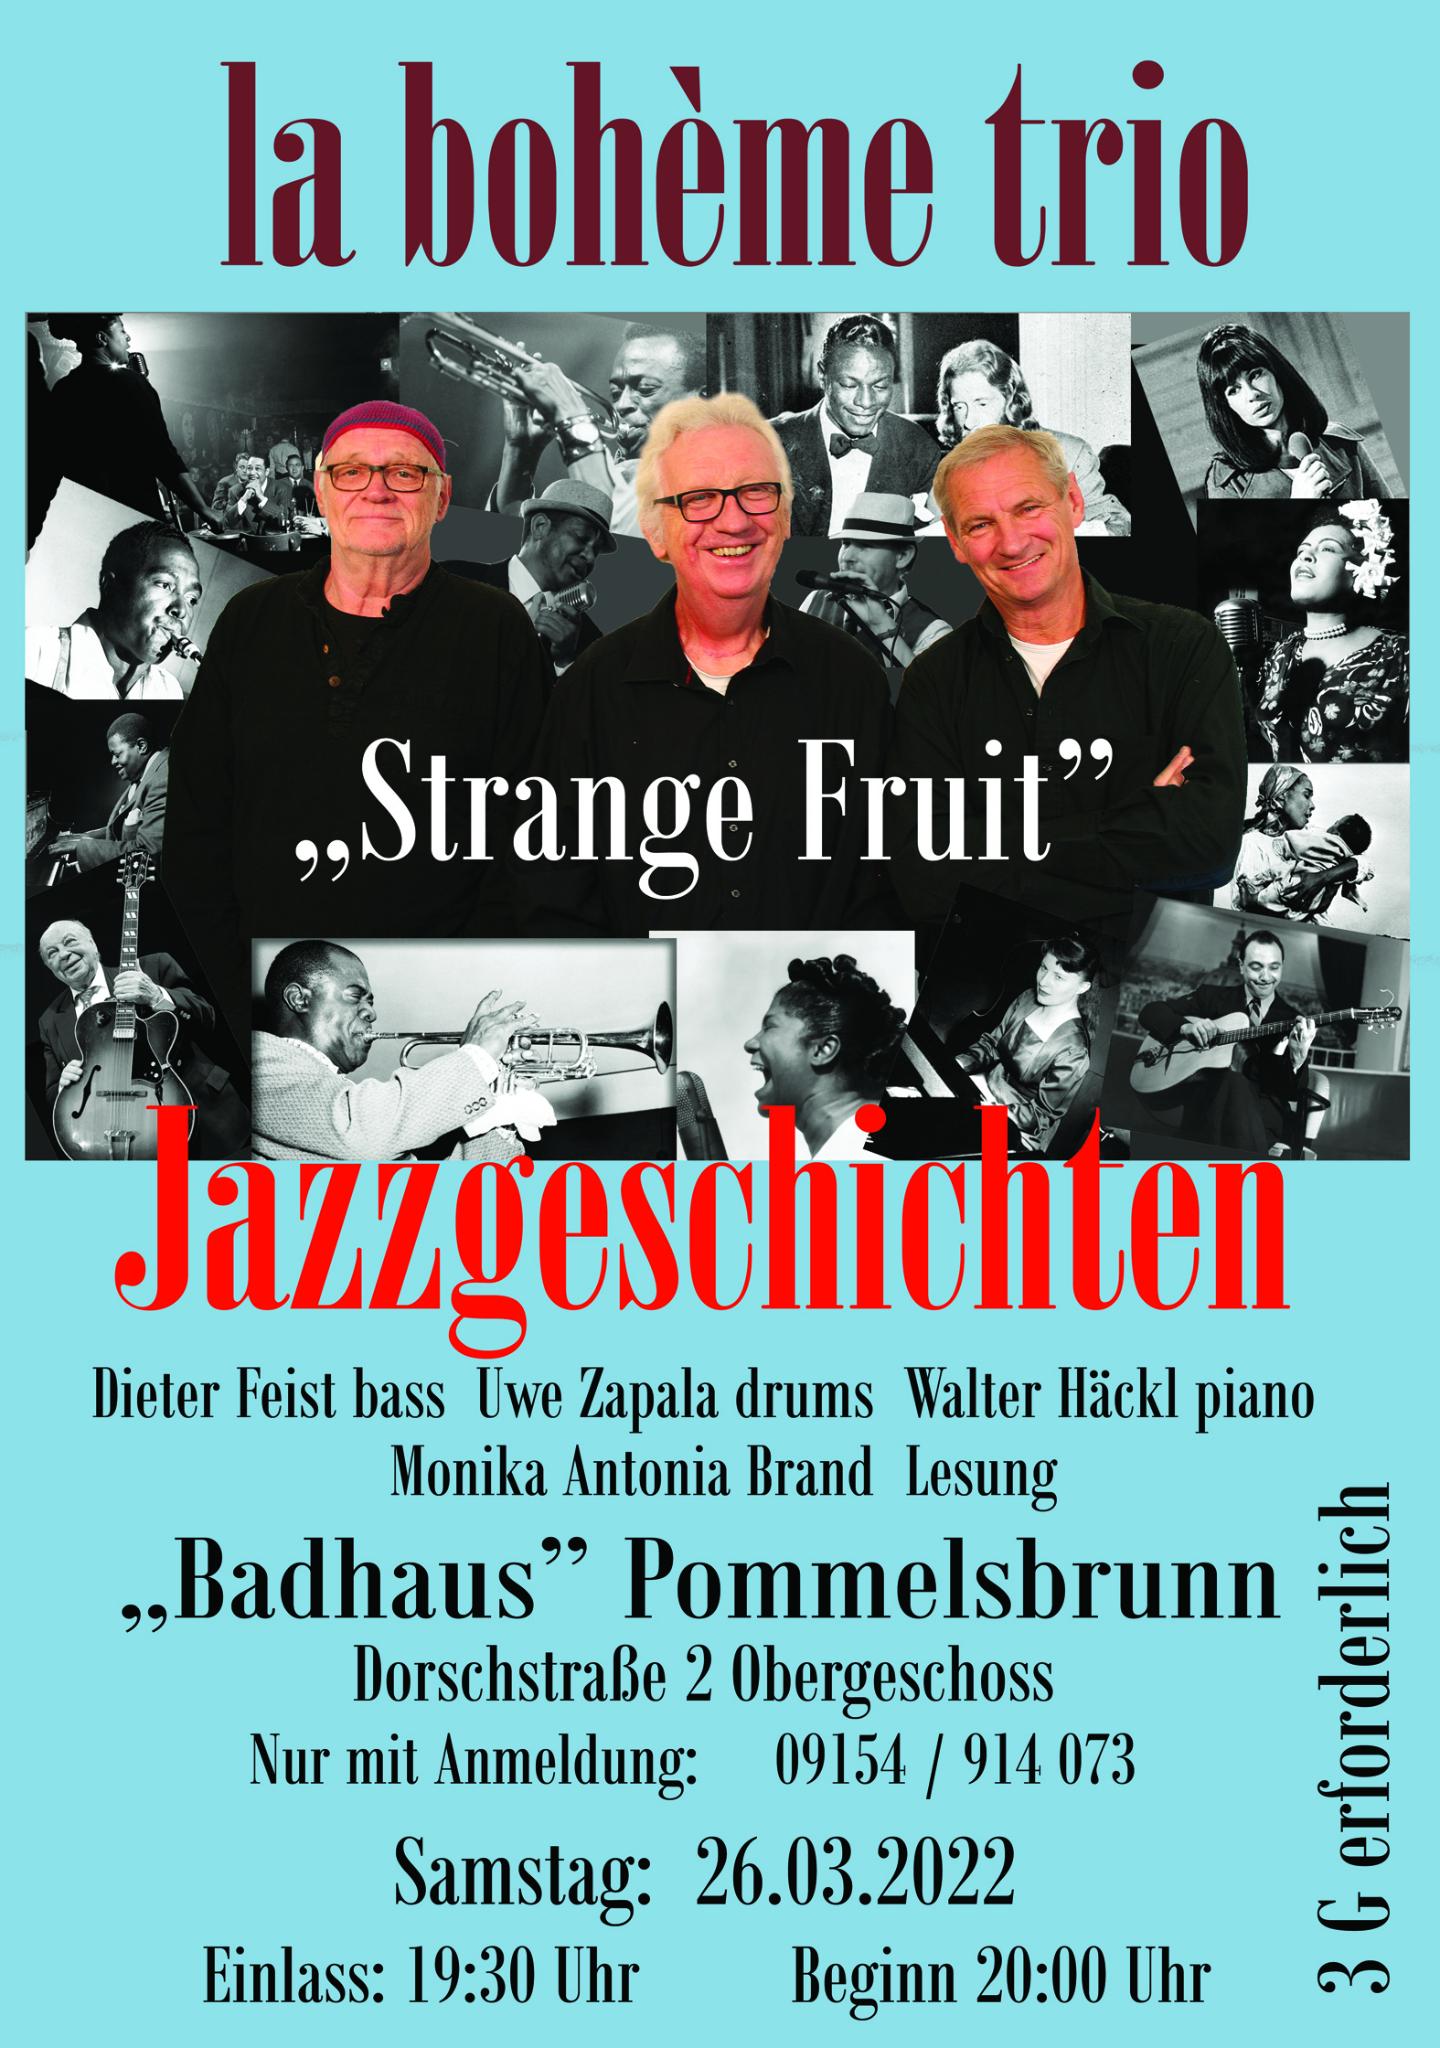 26.03. 19:30 im “Badhaus” Pommelsbrunn: Jazzgeschichten mit la bohème trio und Monika Antonia Brand (Lesung)